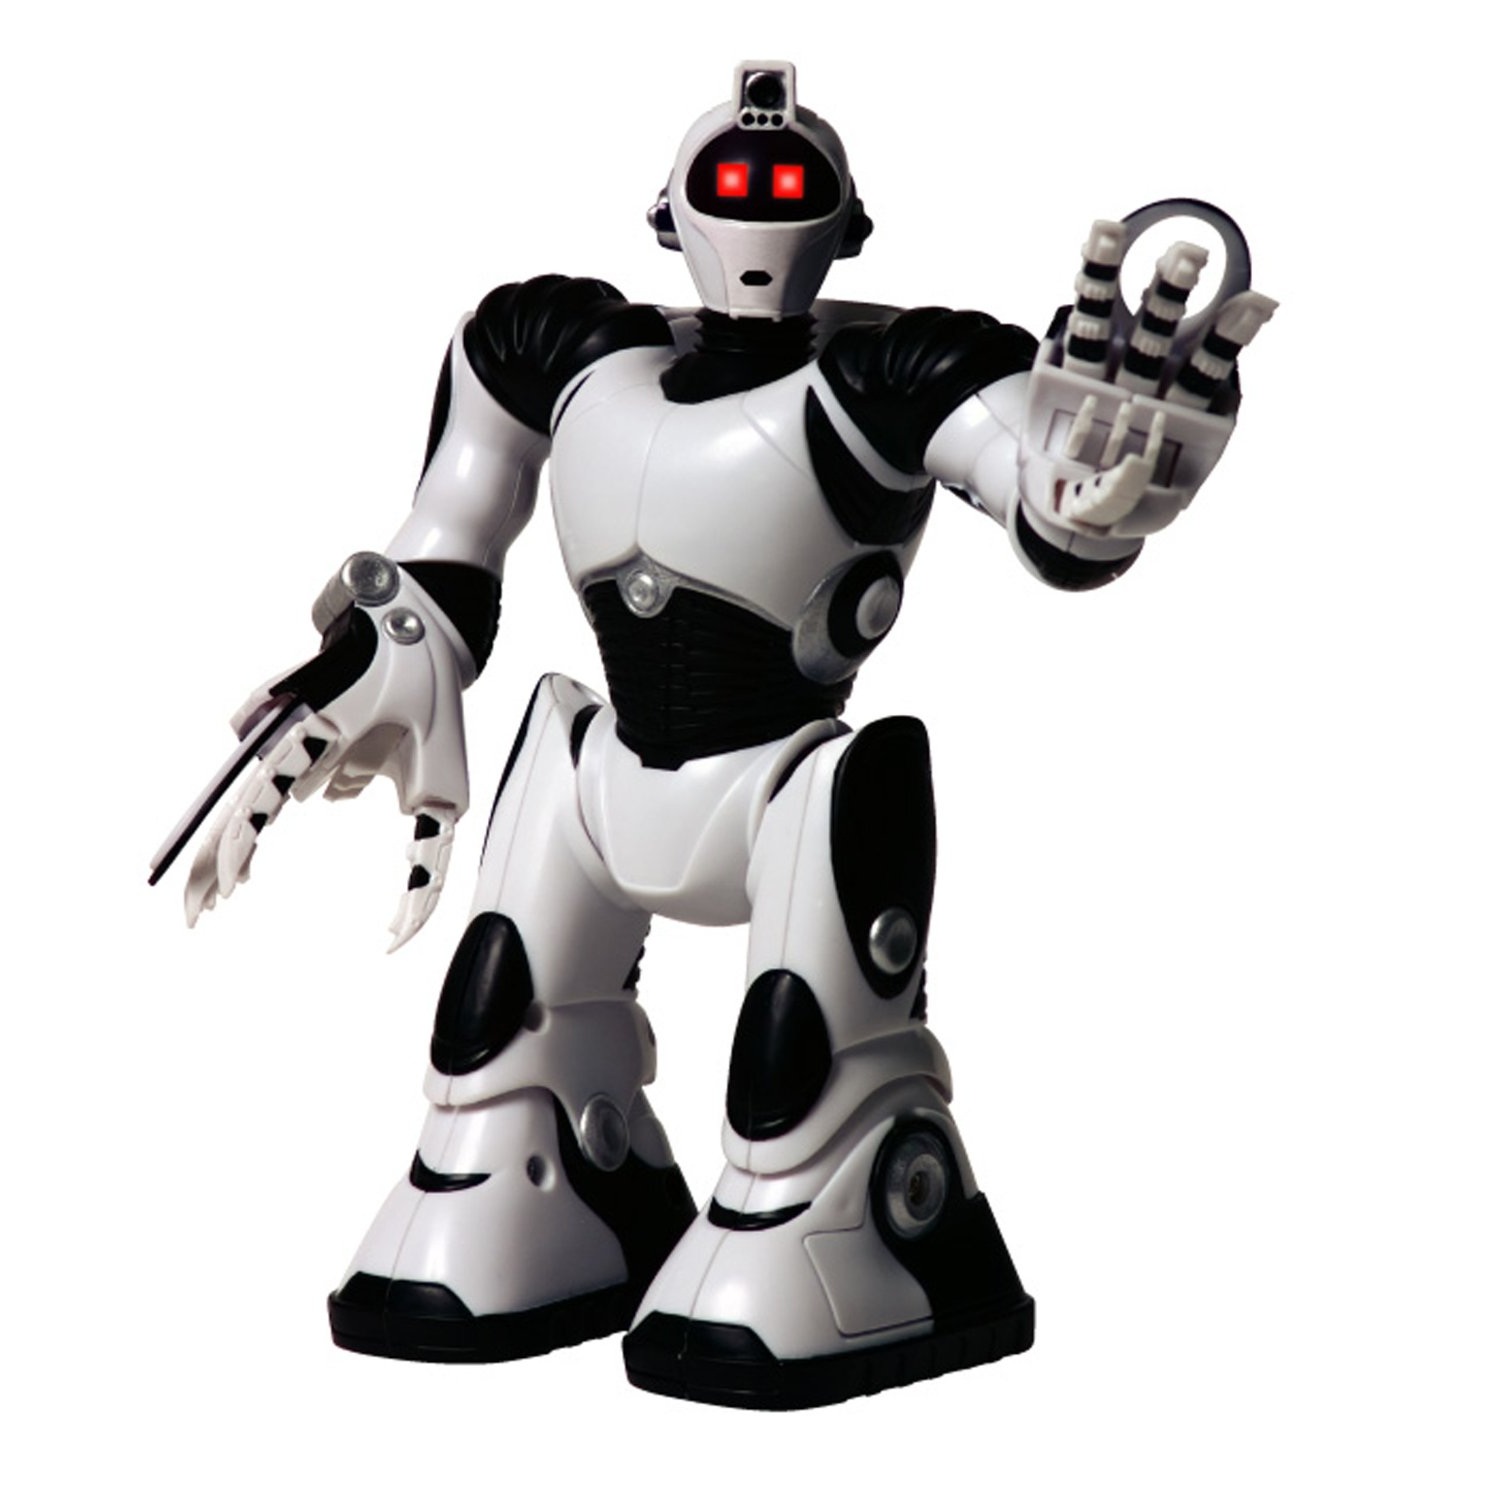 Мальчик купил робота. Робот WOWWEE Robosapien. Робот WOWWEE Robosapien 2. Мини робот (Робосапиен v2). Интерактивная игрушка робот WOWWEE Robosapien.